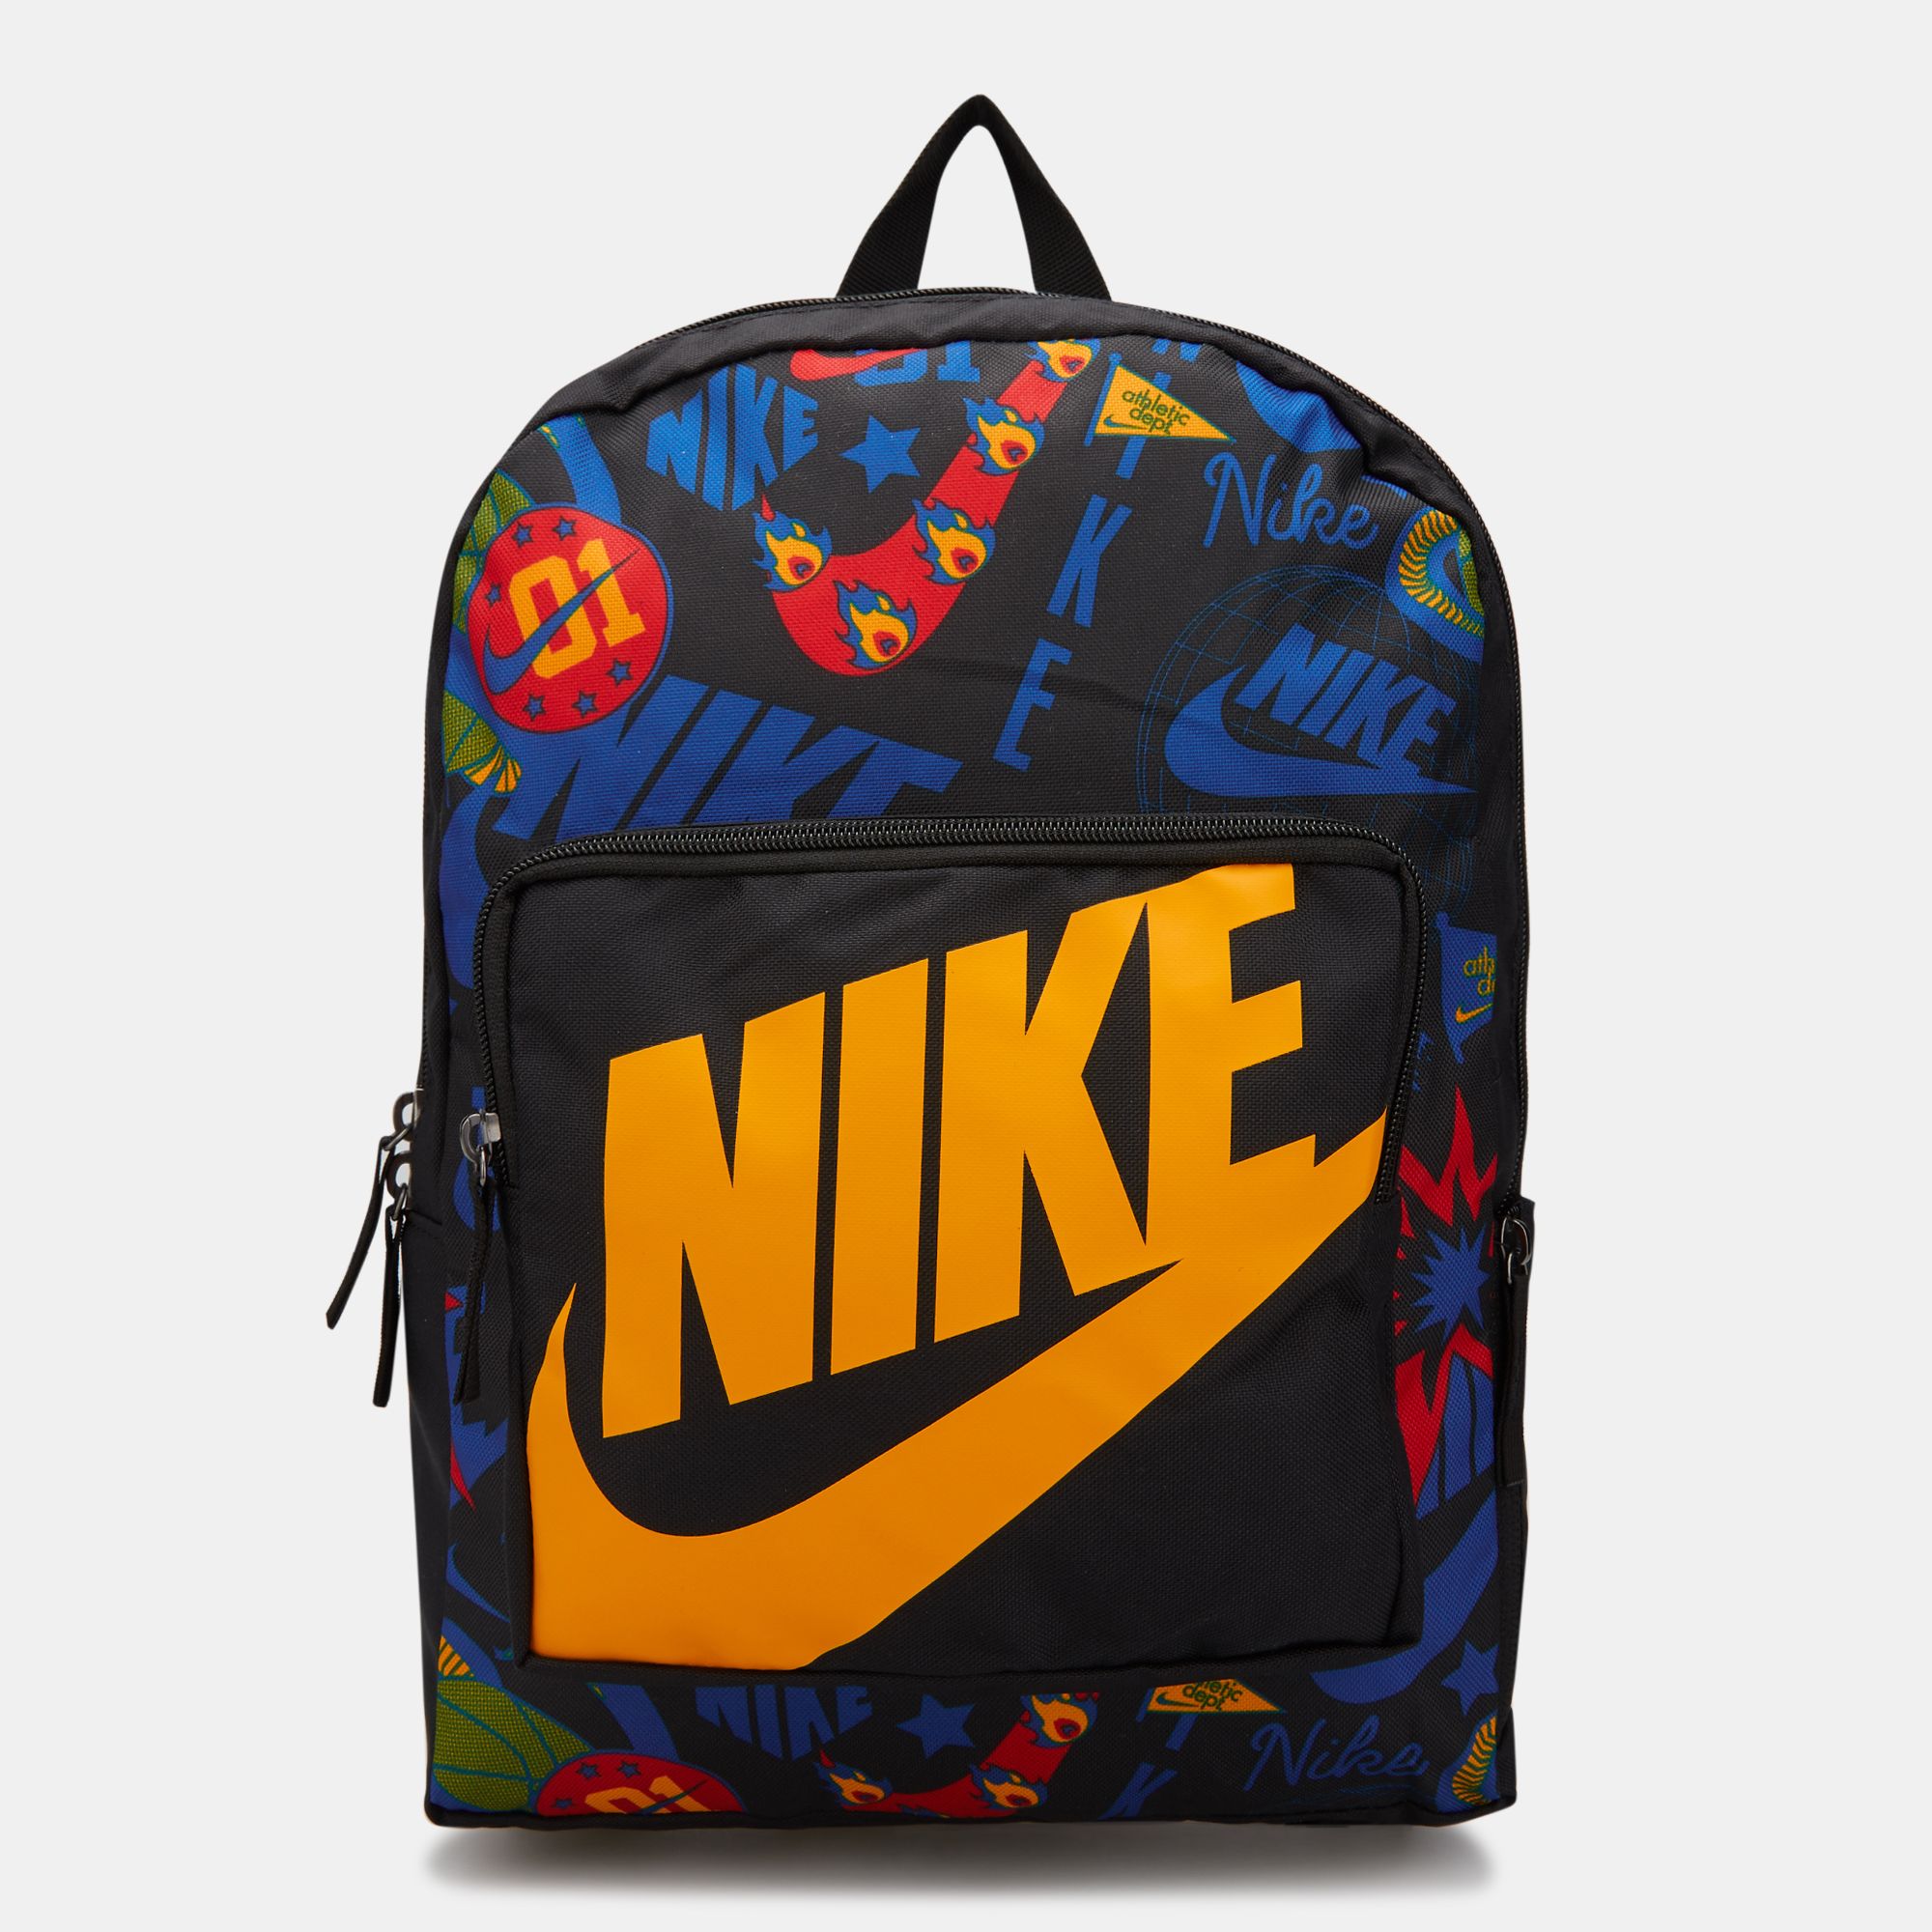 nike classic kids printed backpack